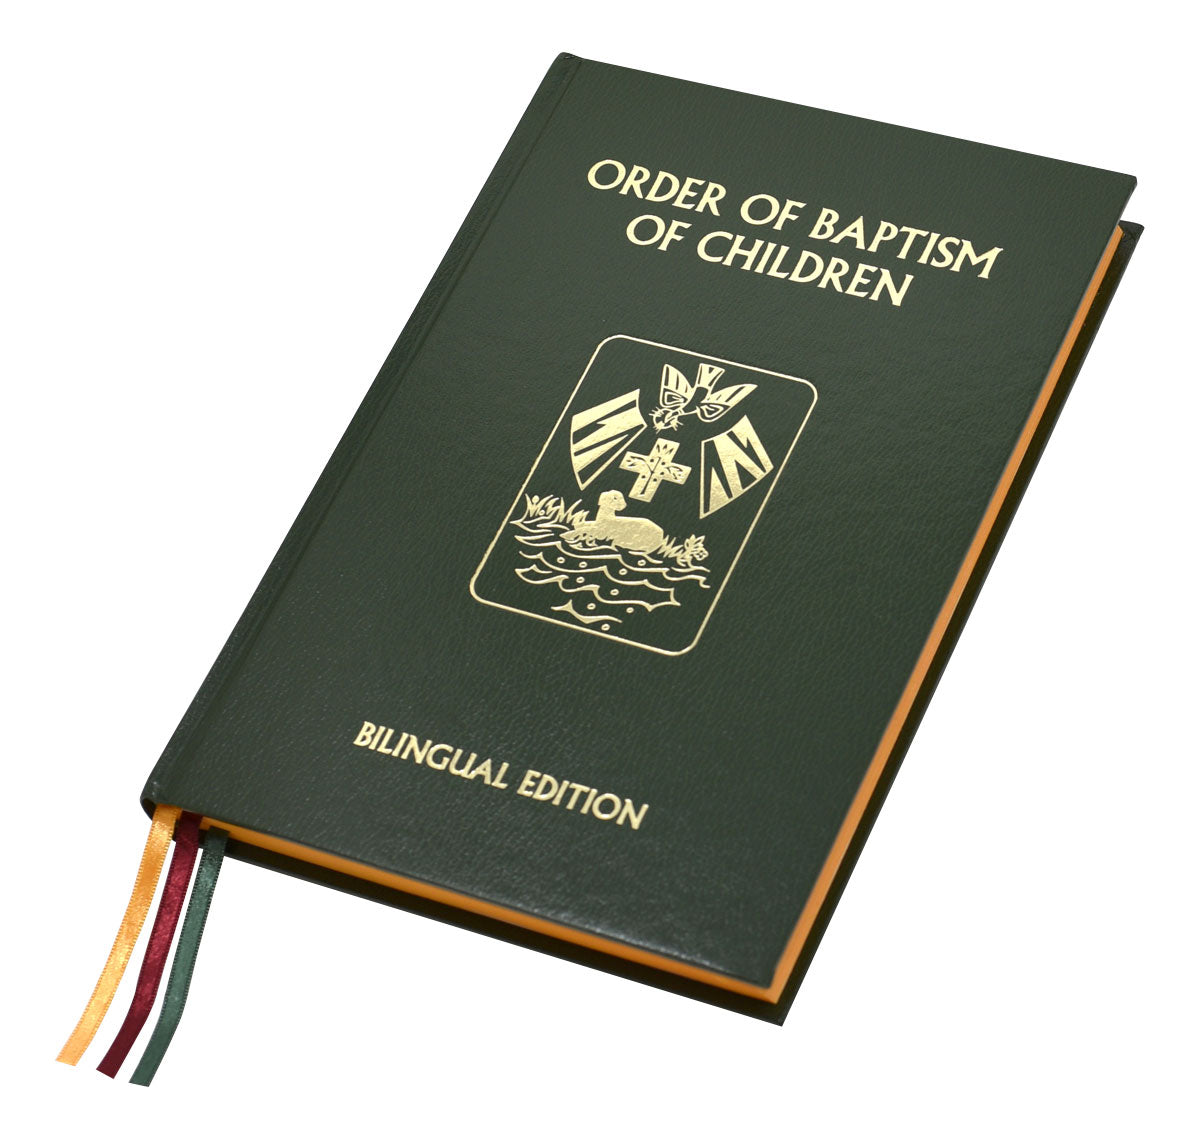 Orden del Bautismo de los Niños (Edición Bilingüe): Segunda Edición